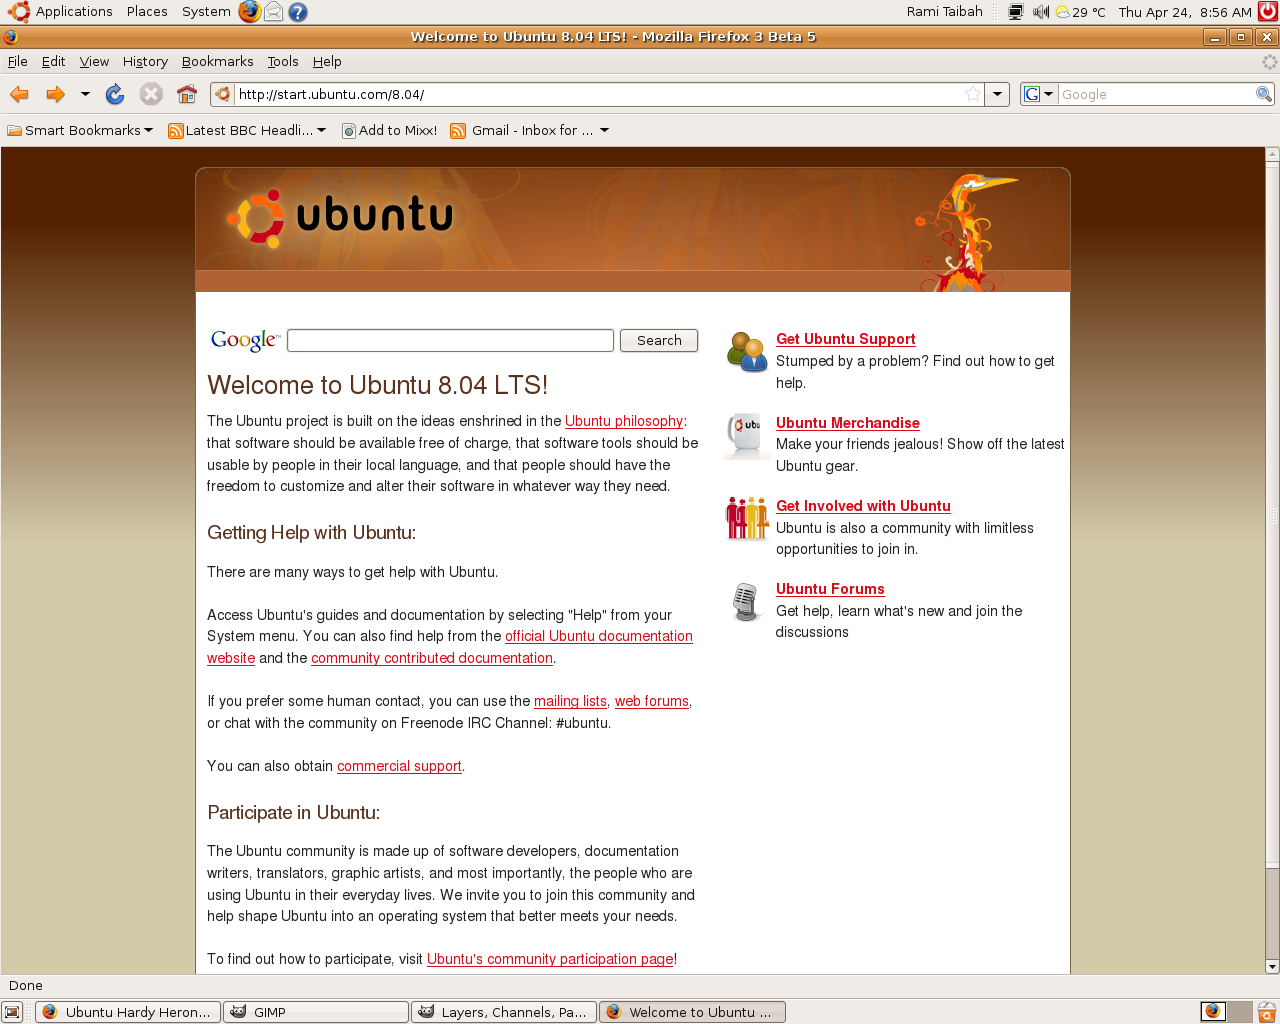 Firefox 3 Beta 5 on Ubuntu Linux Hardy Heron 8.04